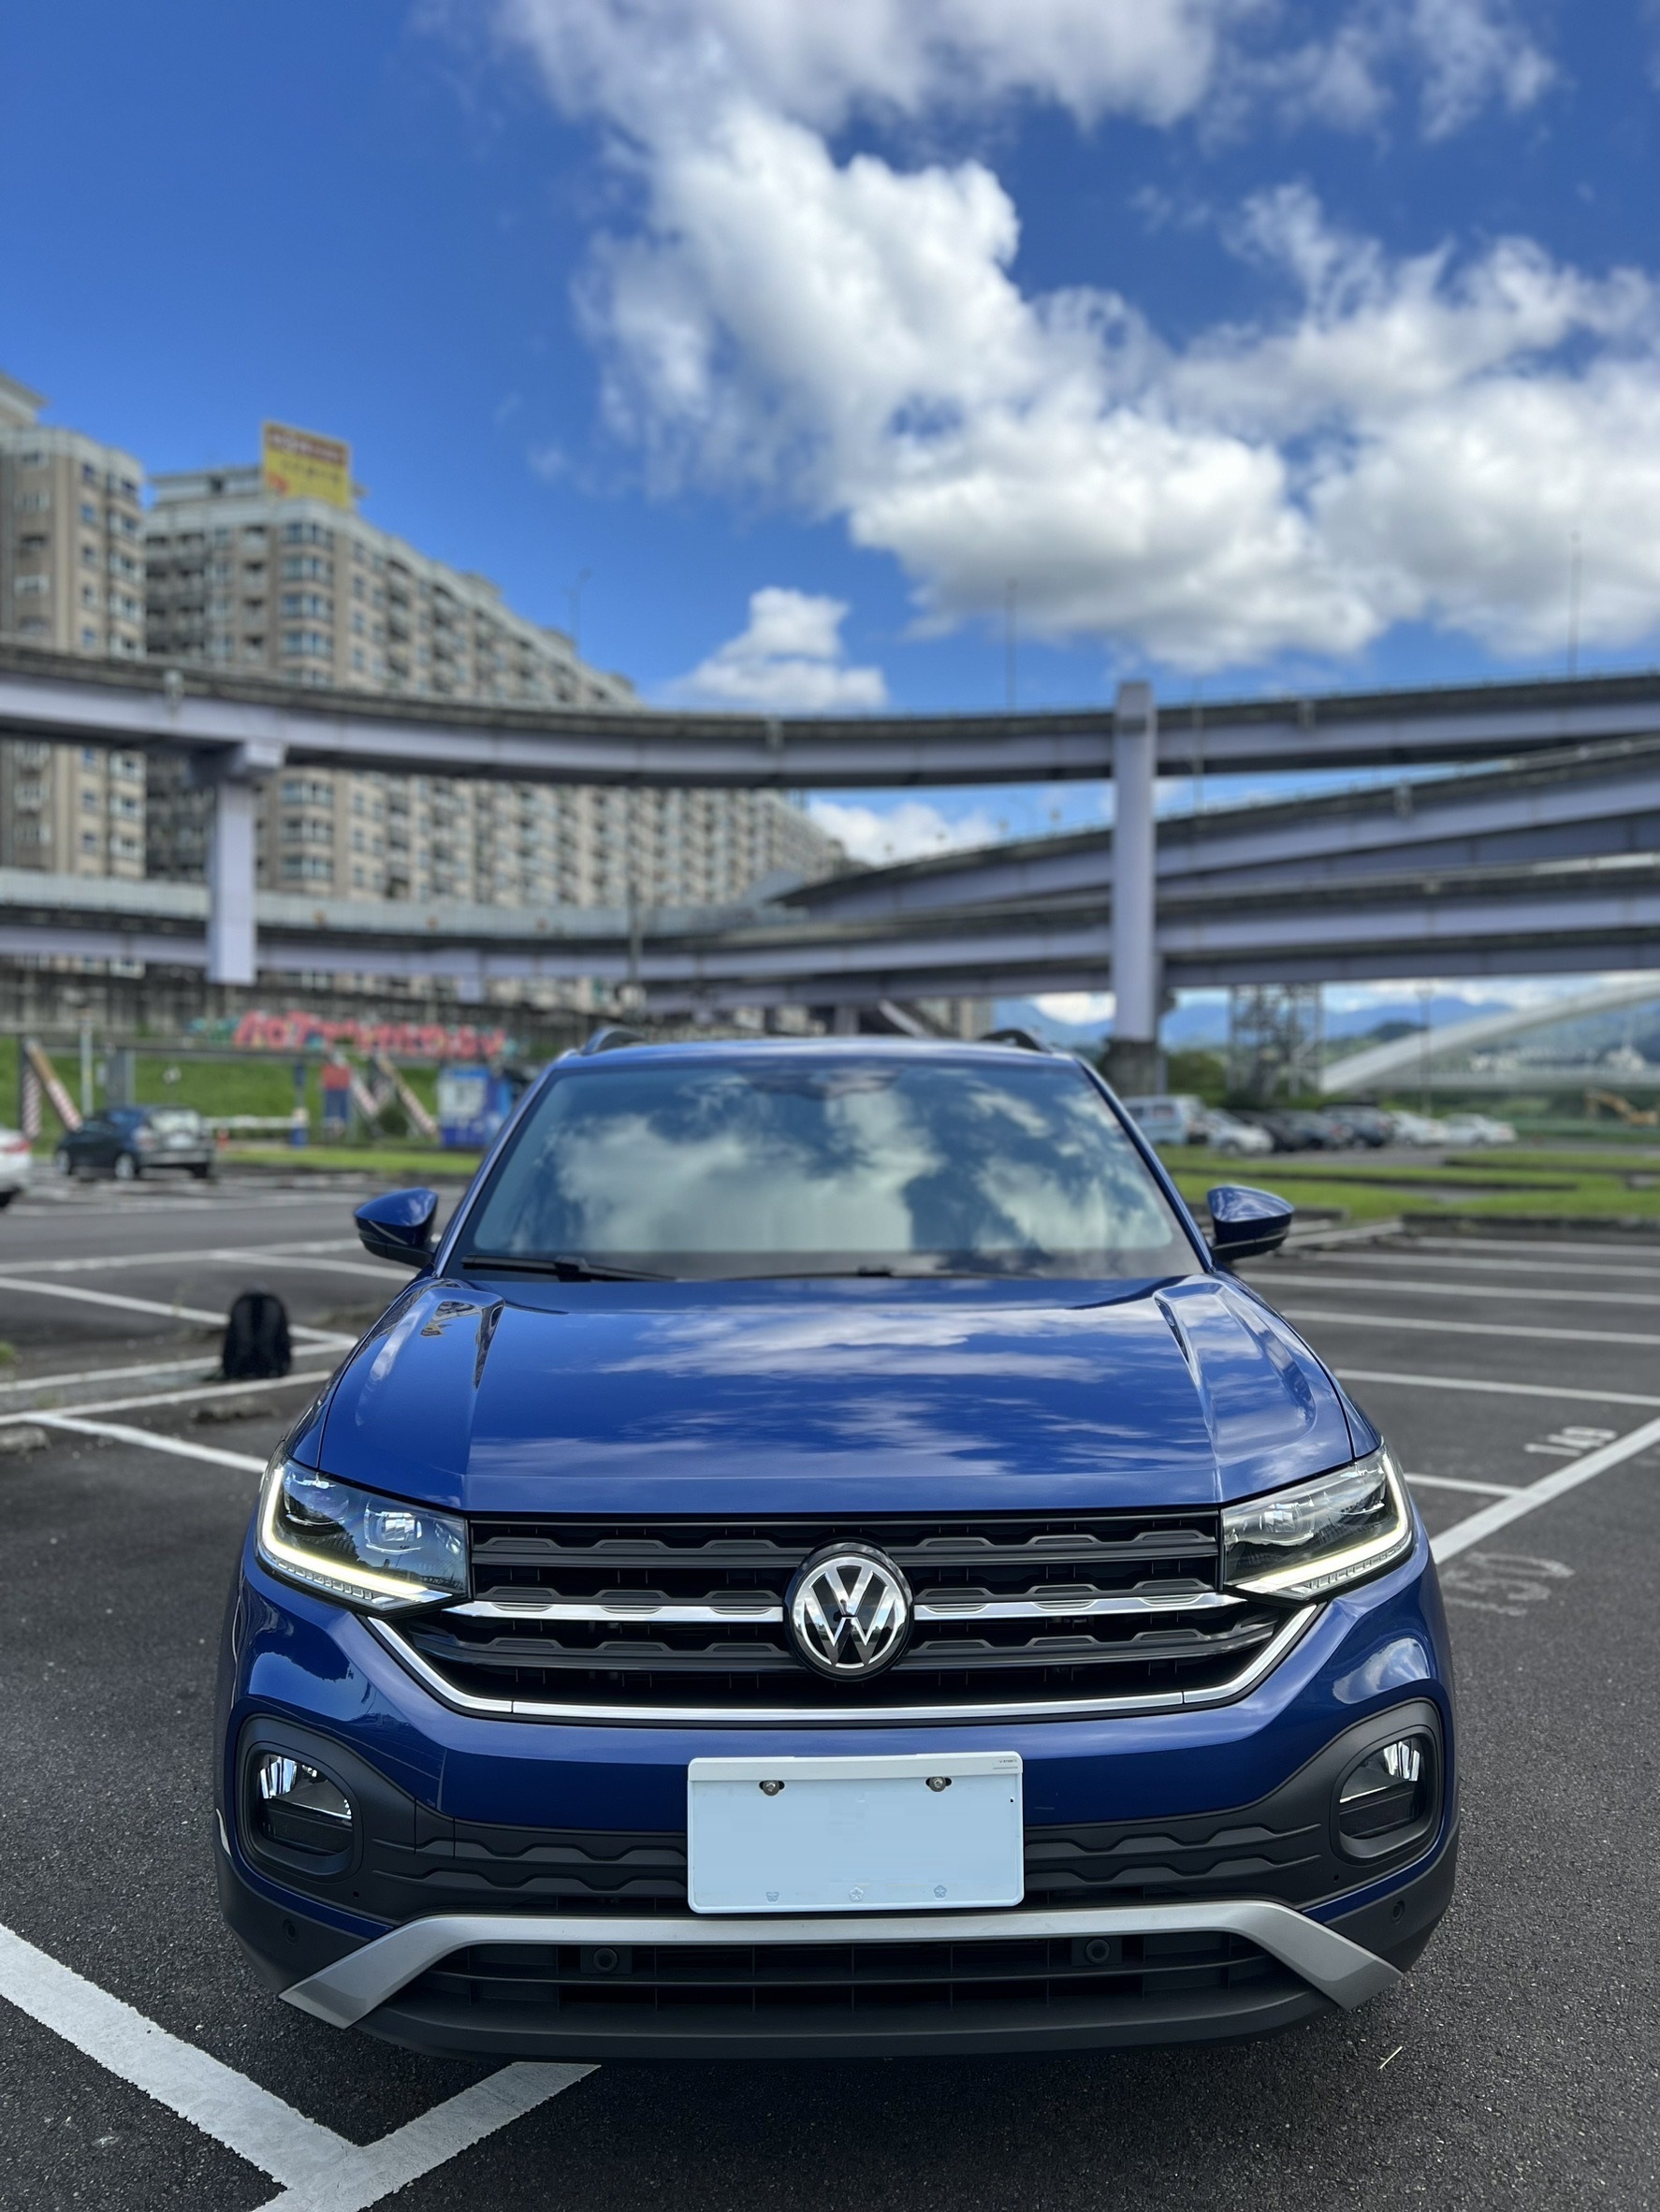 2020 Volkswagen 福斯 T-cross